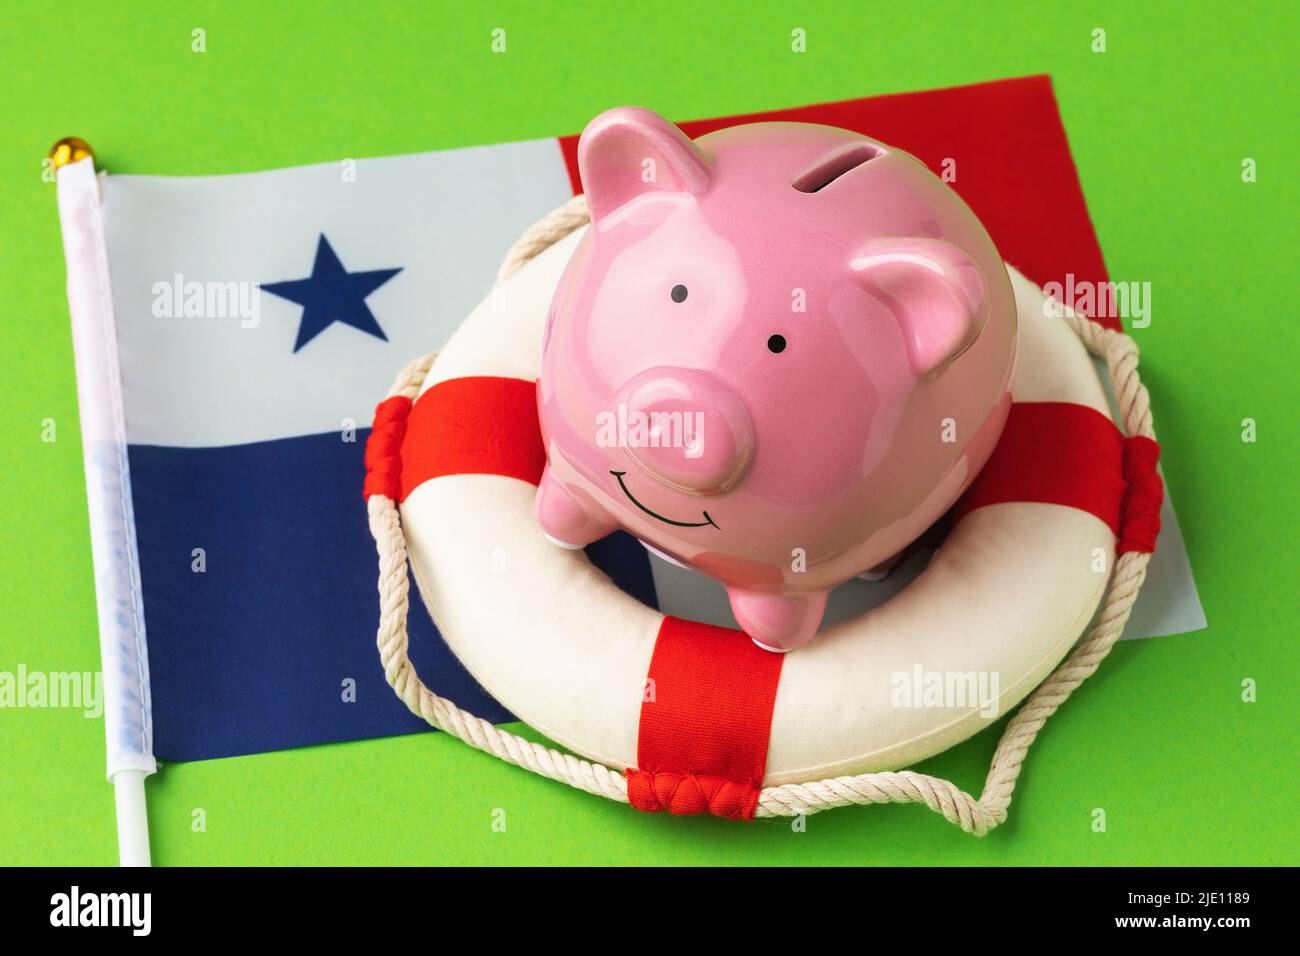 Banco de cerdos, salvavidas y bandera sobre fondo azul, el concepto de salvar la economía panameña Foto de stock